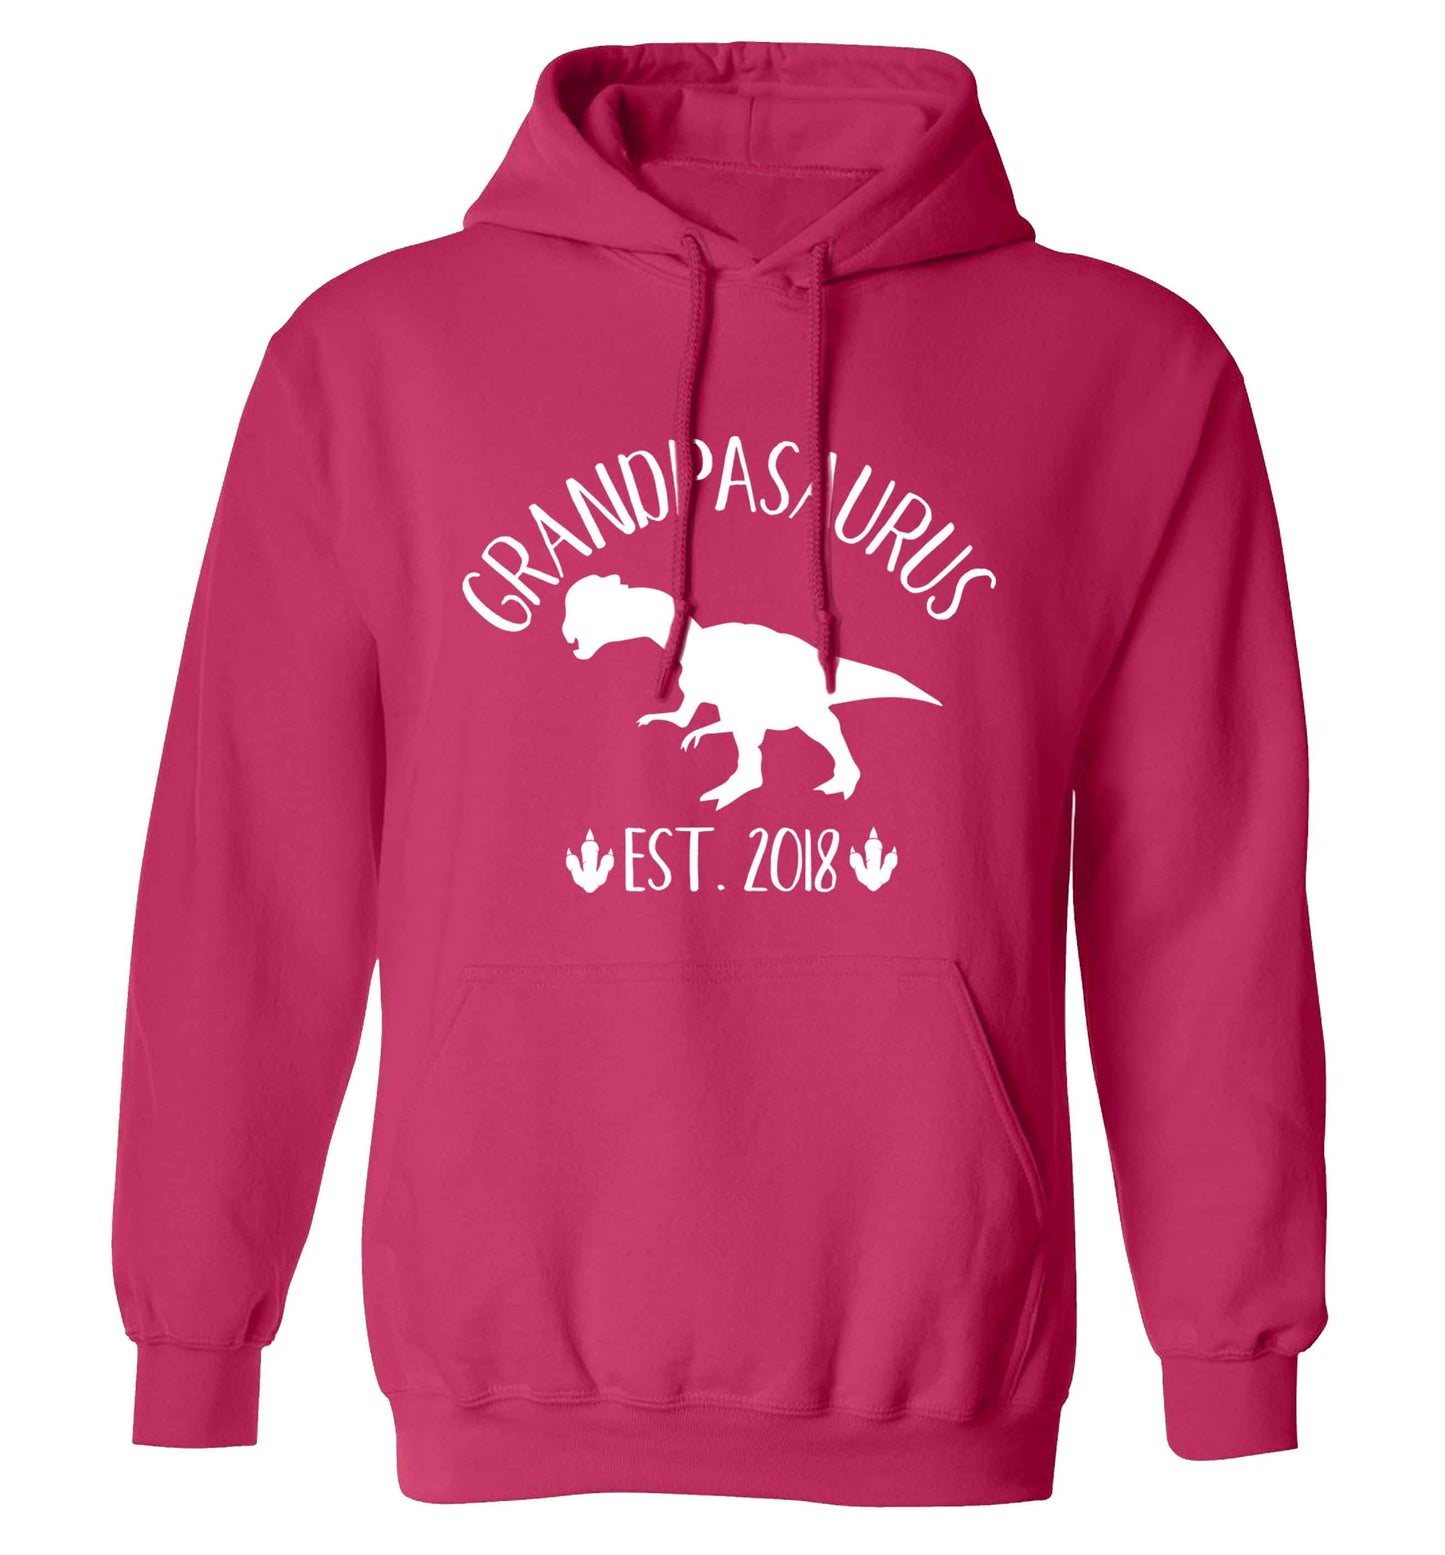 Personalised grandpasaurus since (custom date) adults unisex pink hoodie 2XL